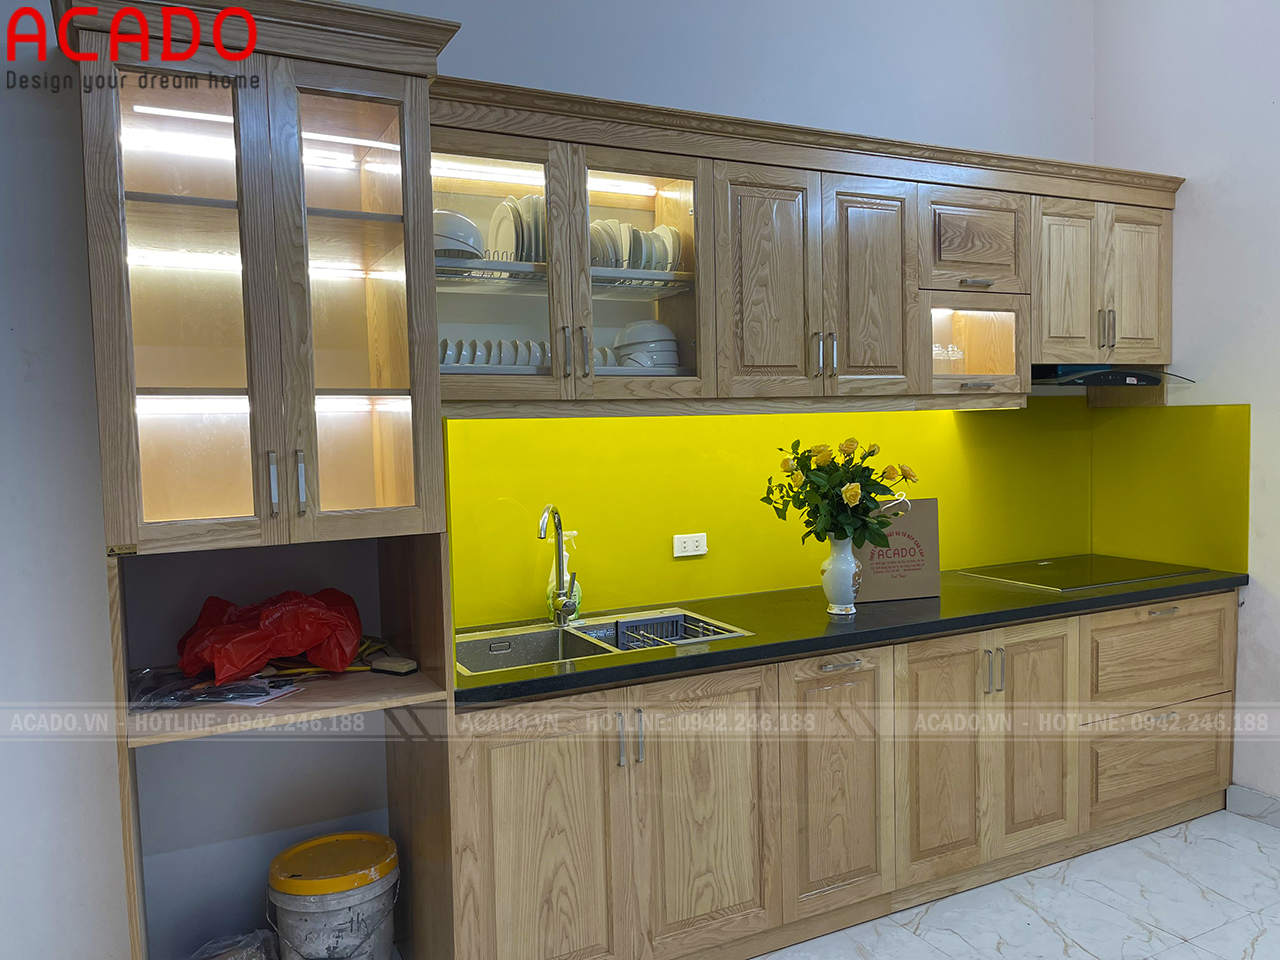 Tủ bếp màu vàng kêt hợp hai hòa với màu kính bếp tạo một vẻ đẹp thống nhất